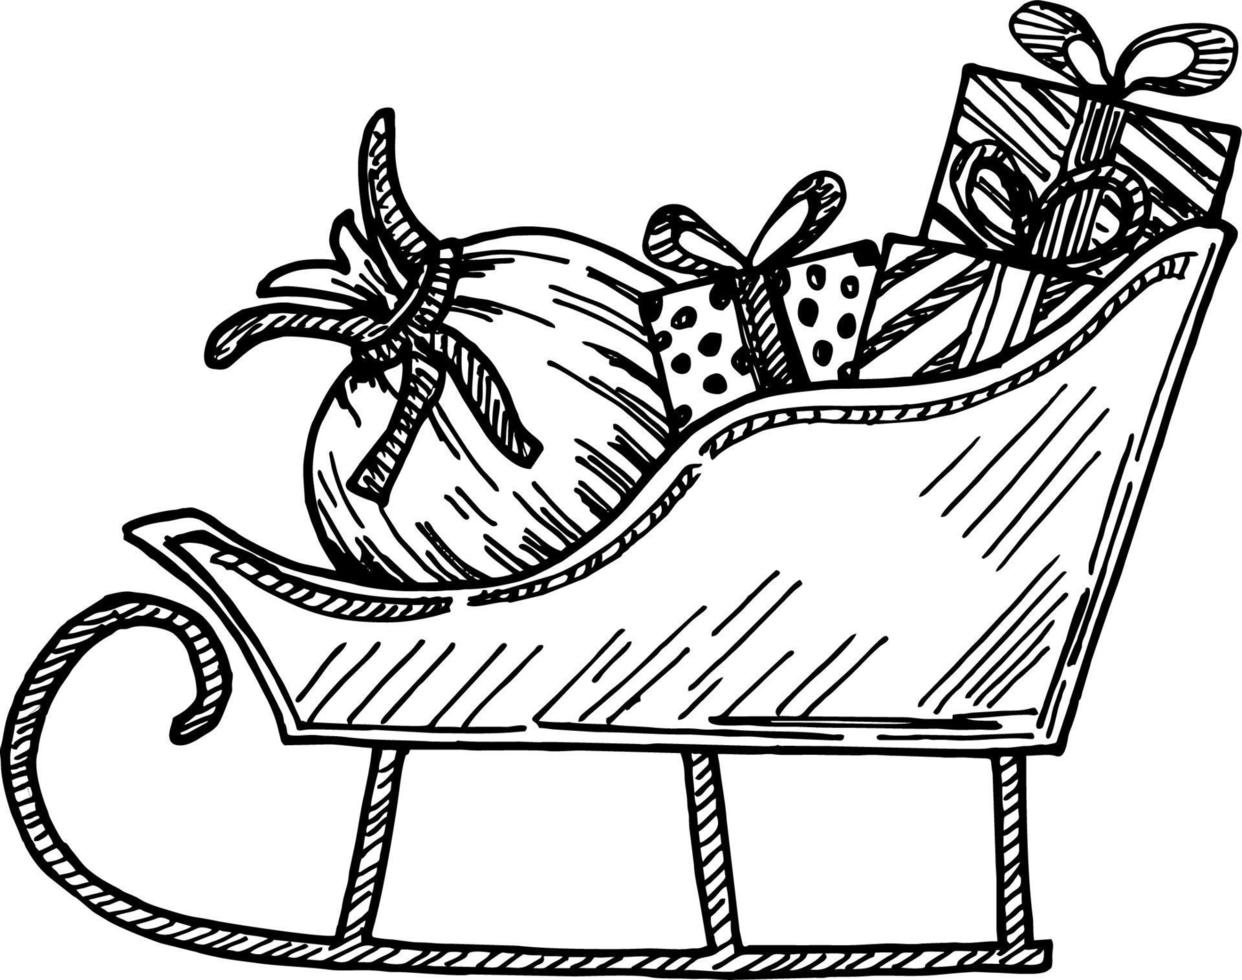 trineo de santa con cajas de regalos de navidad con arcos y árbol de navidad. boceto ilustración vectorial vector